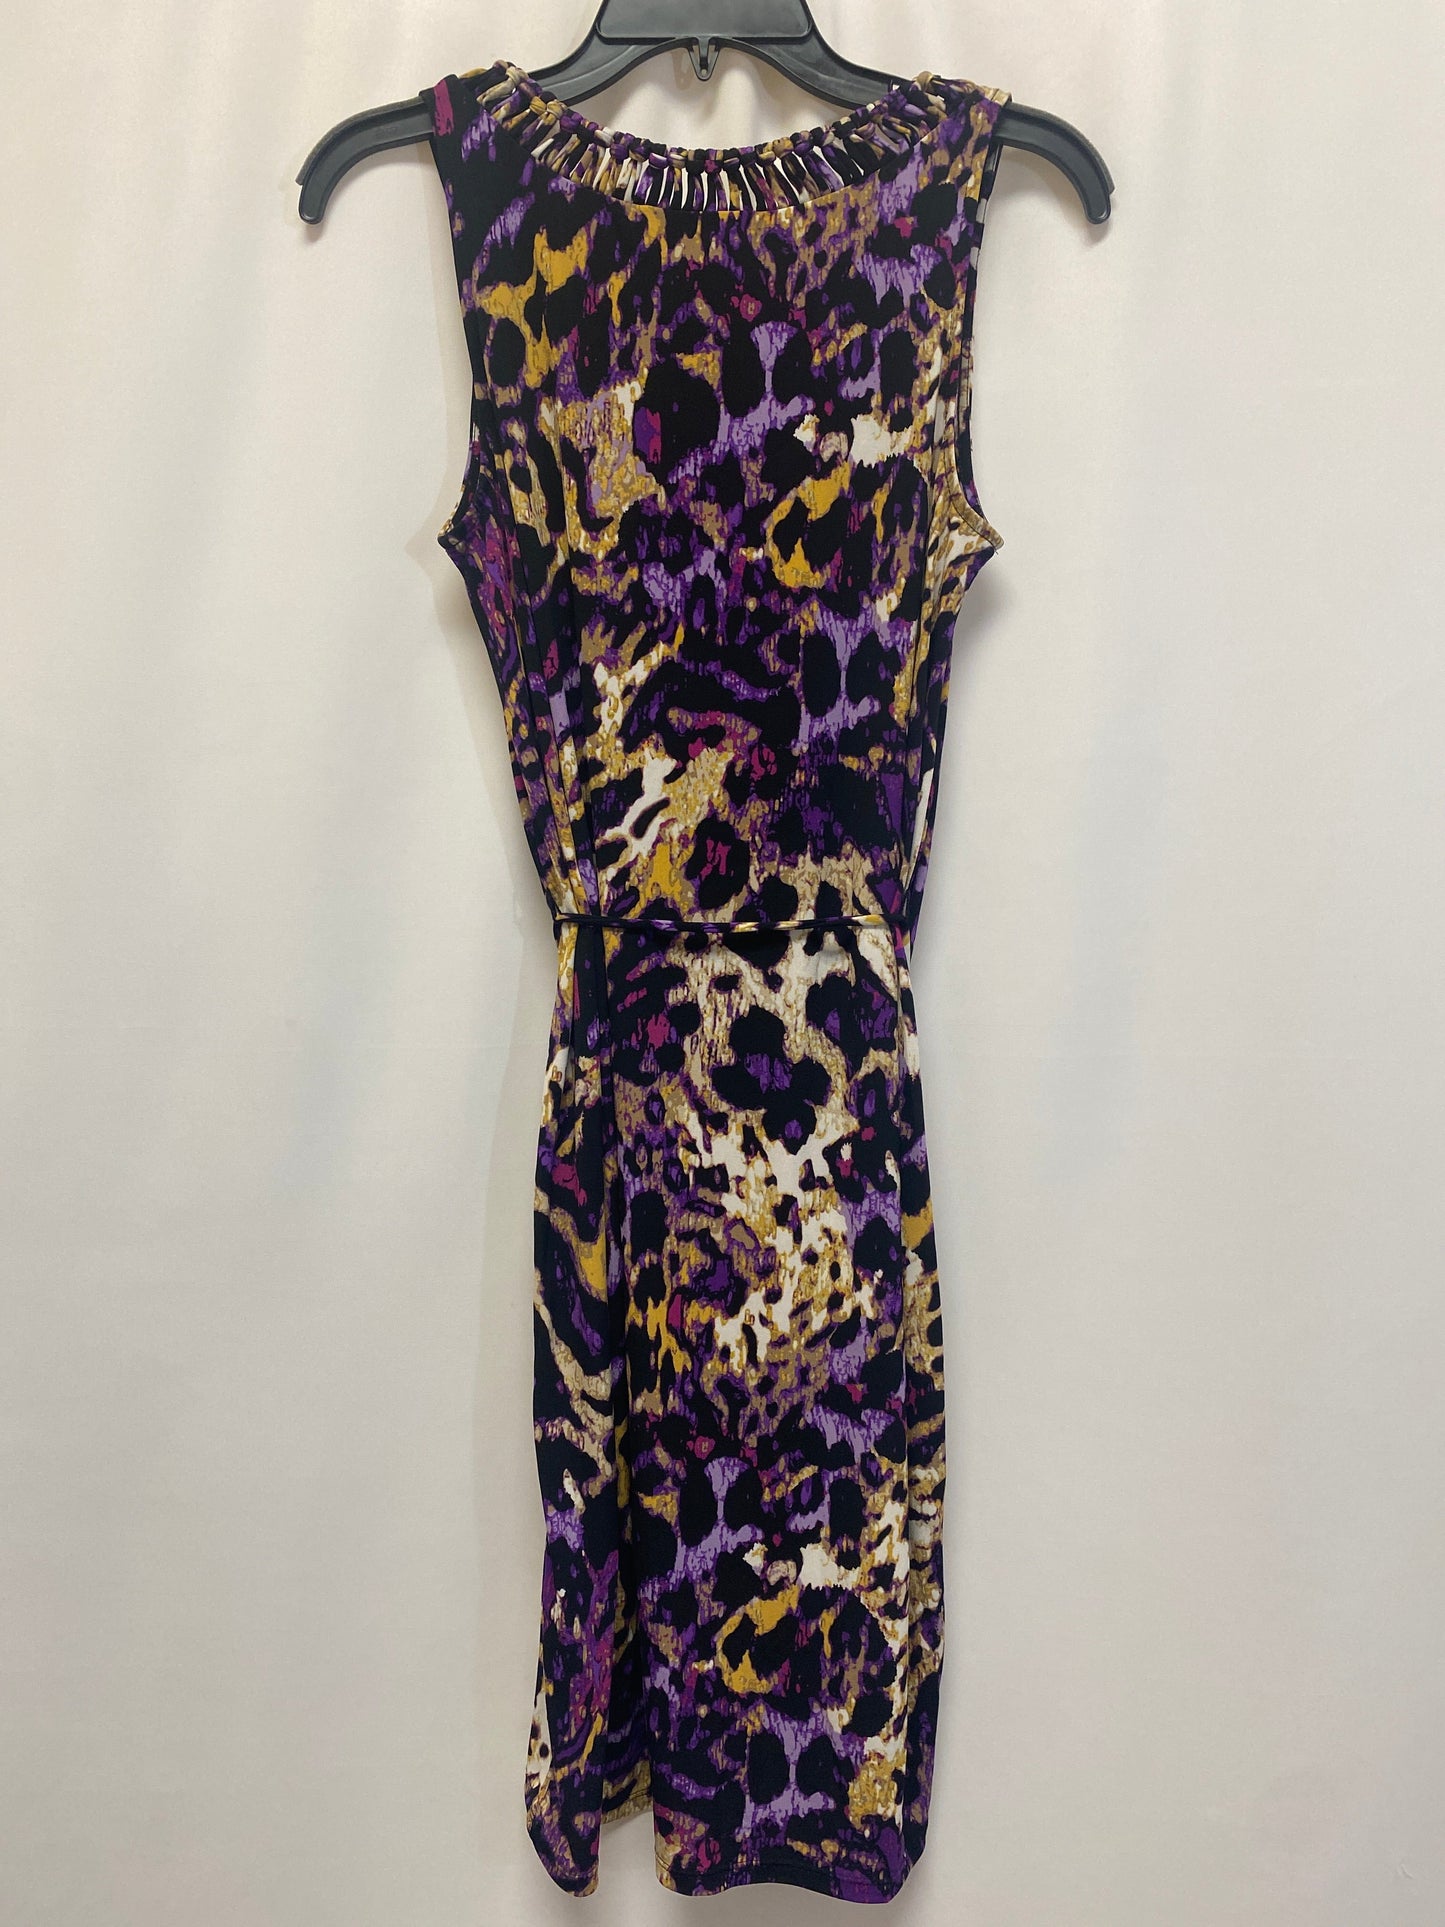 Dress Casual Midi By Dana Buchman  Size: Xs